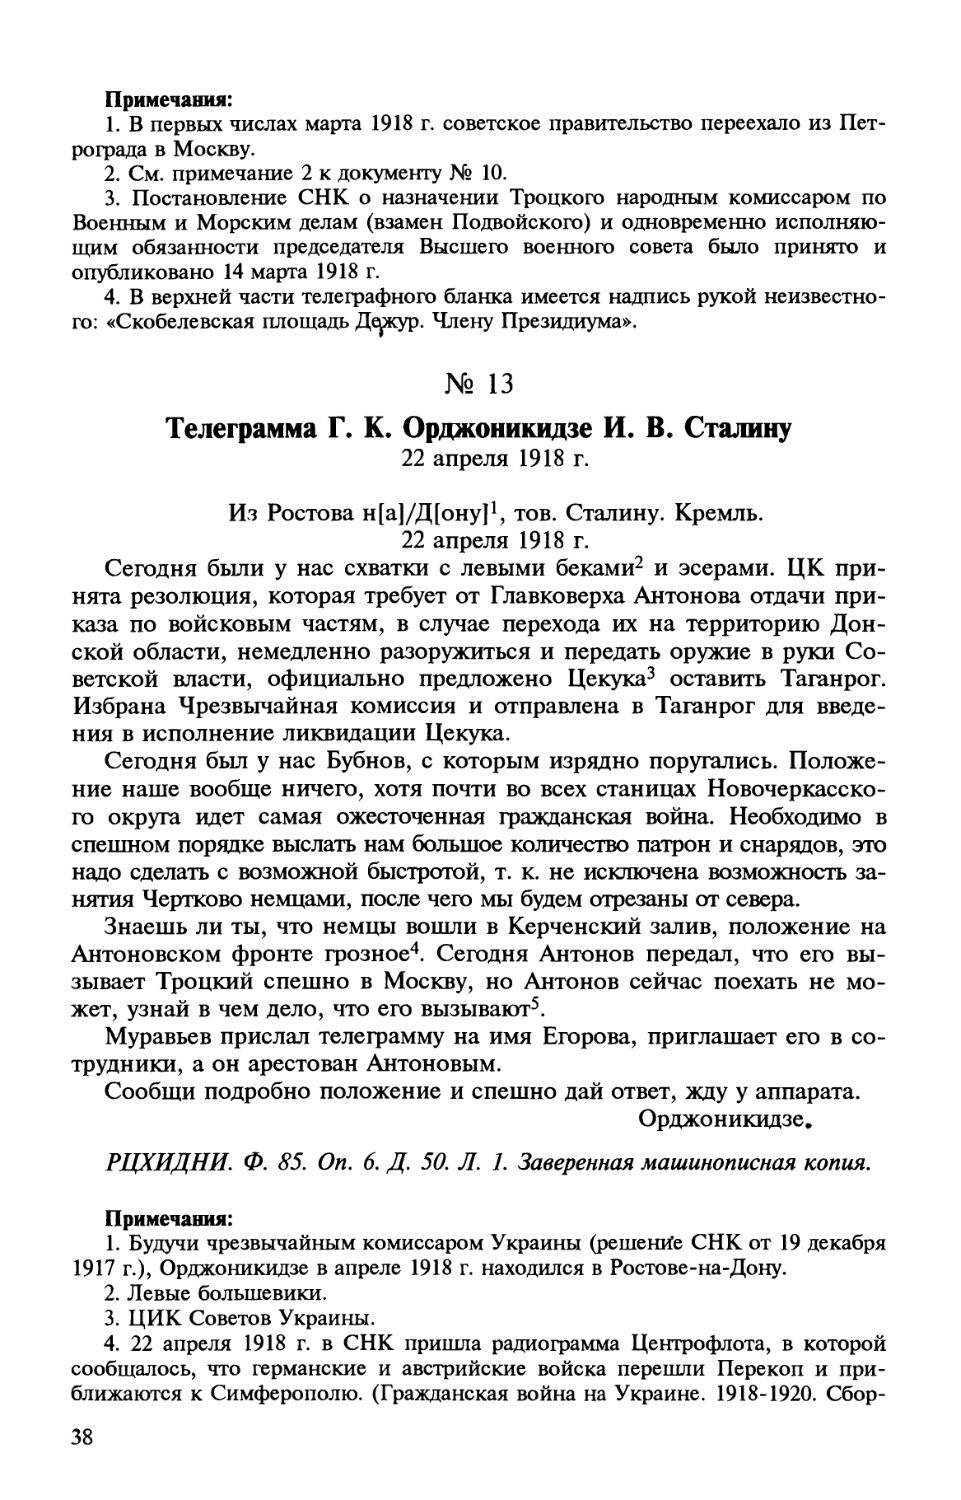 13. Телеграмма Г. К. Орджоникидзе И. В. Сталину. 22 апреля 1918 г.